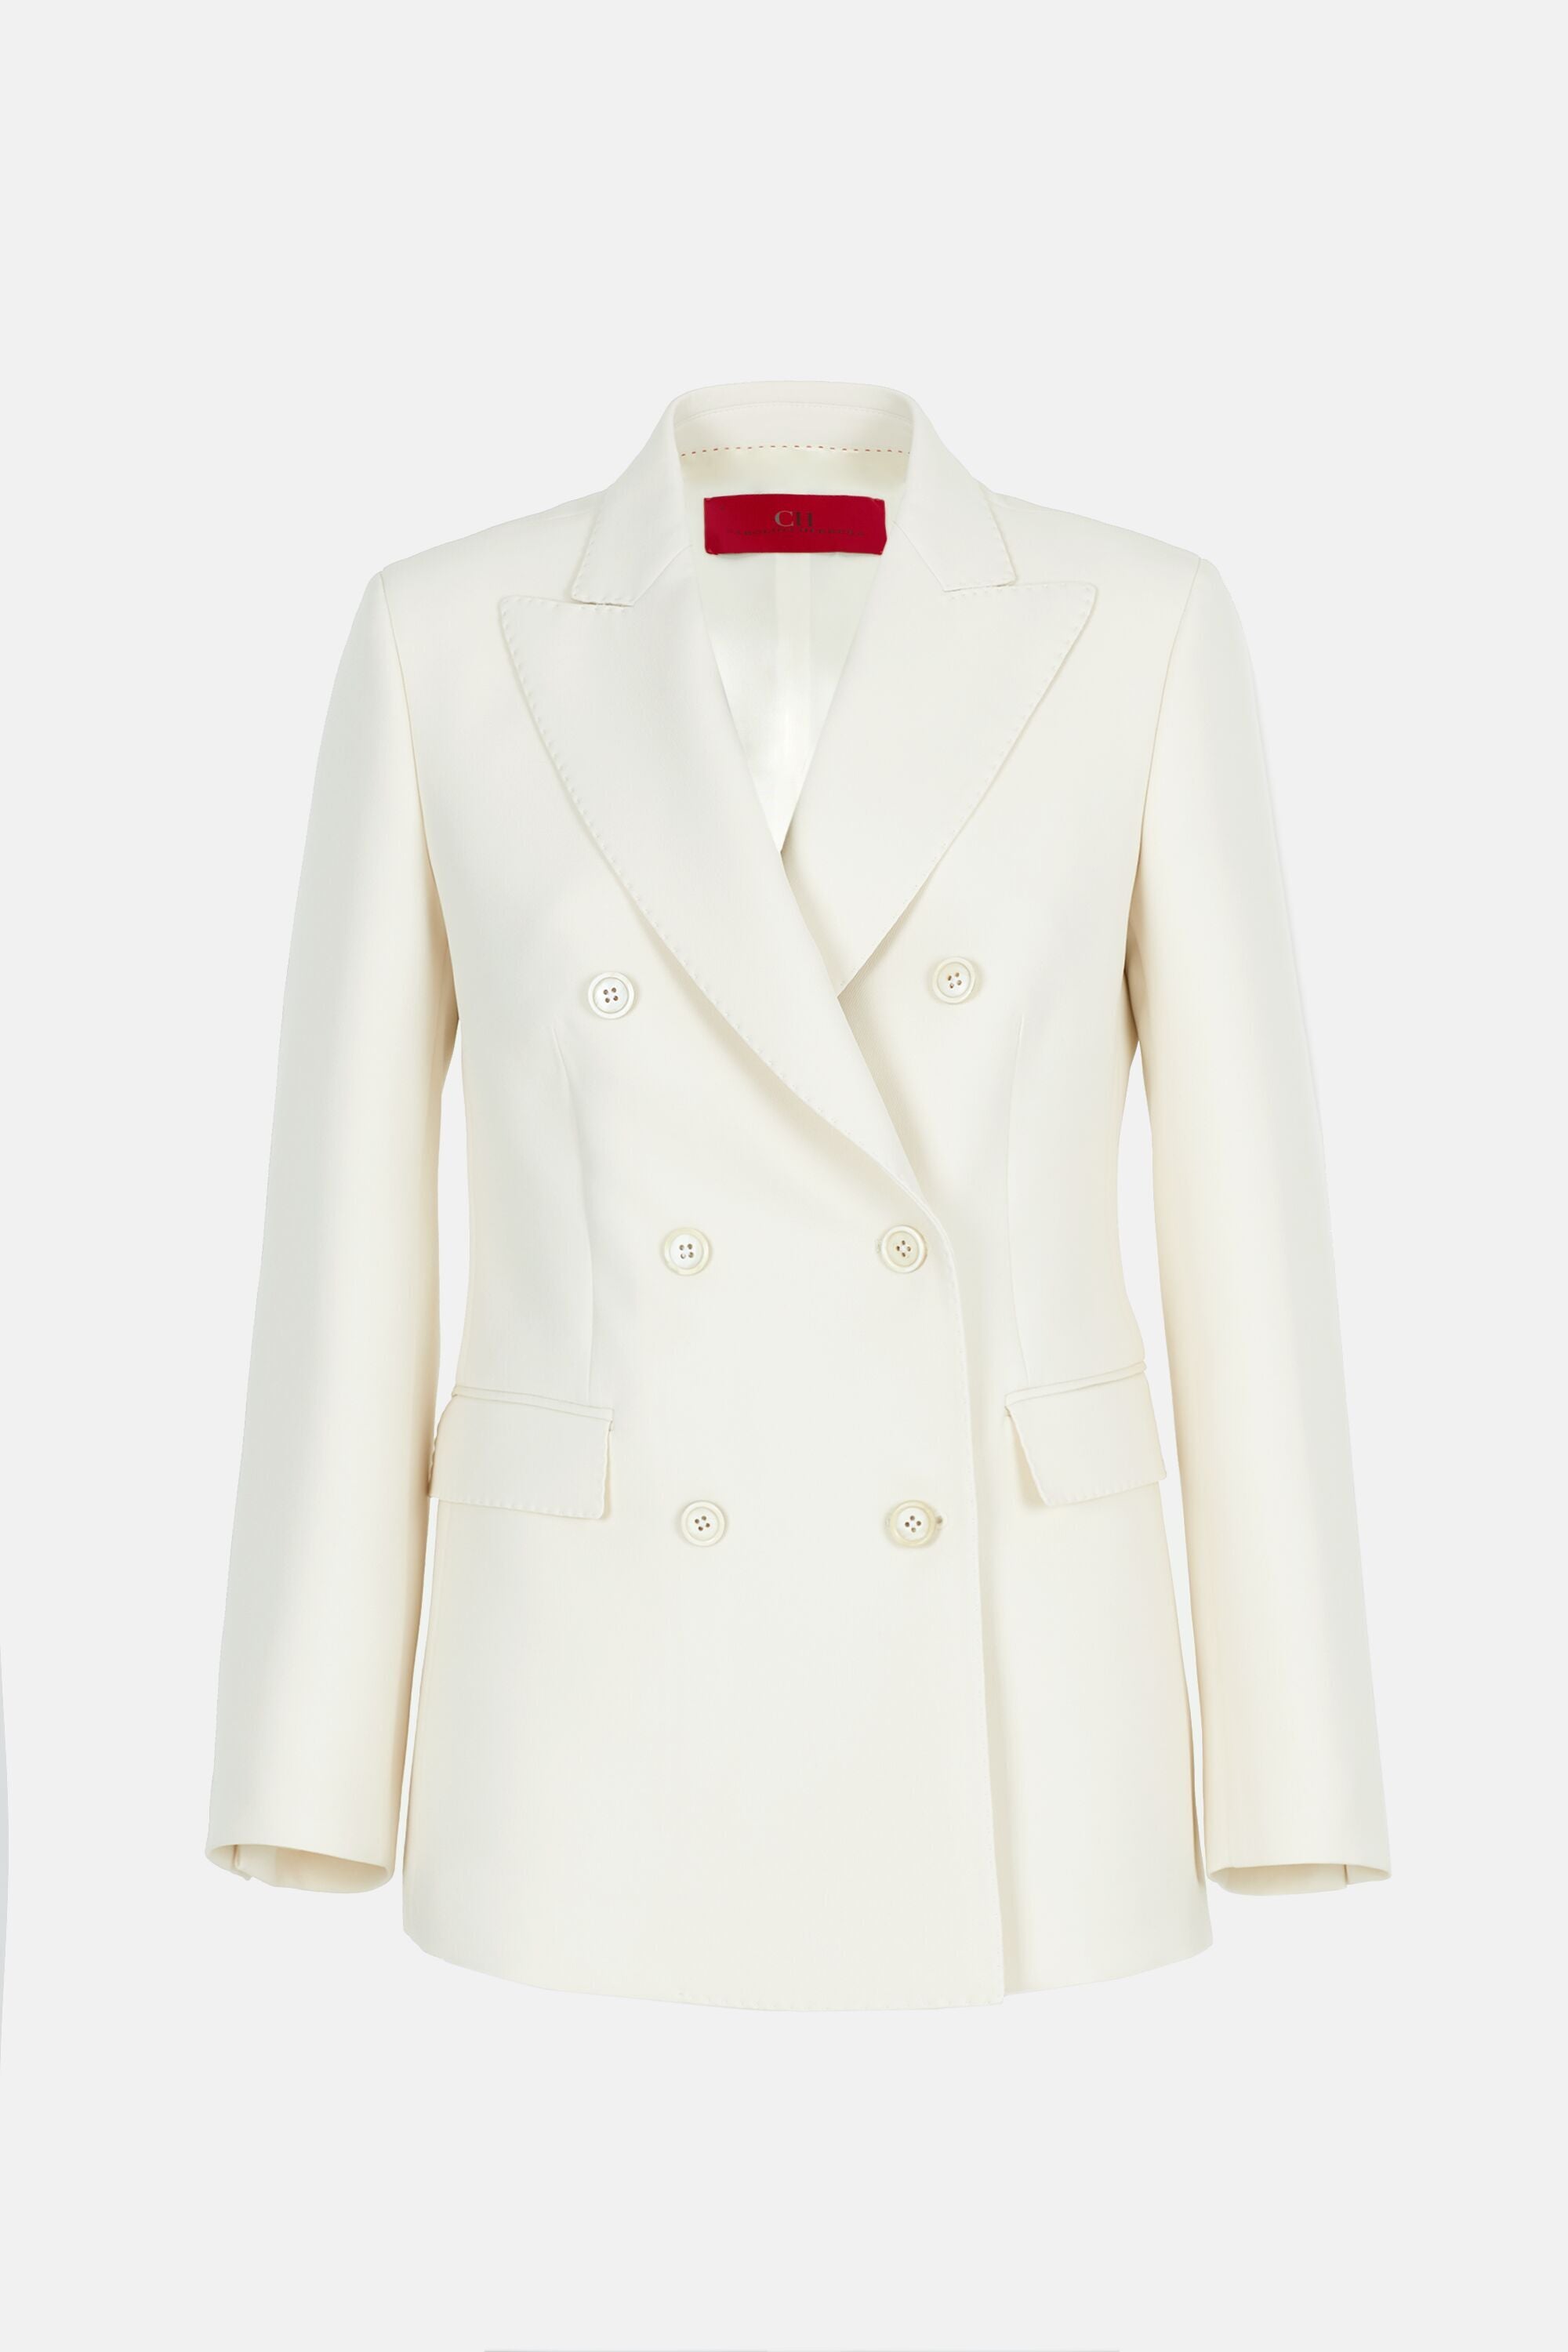 Crepe tailored suit jacket ivory - CH Carolina Herrera United States